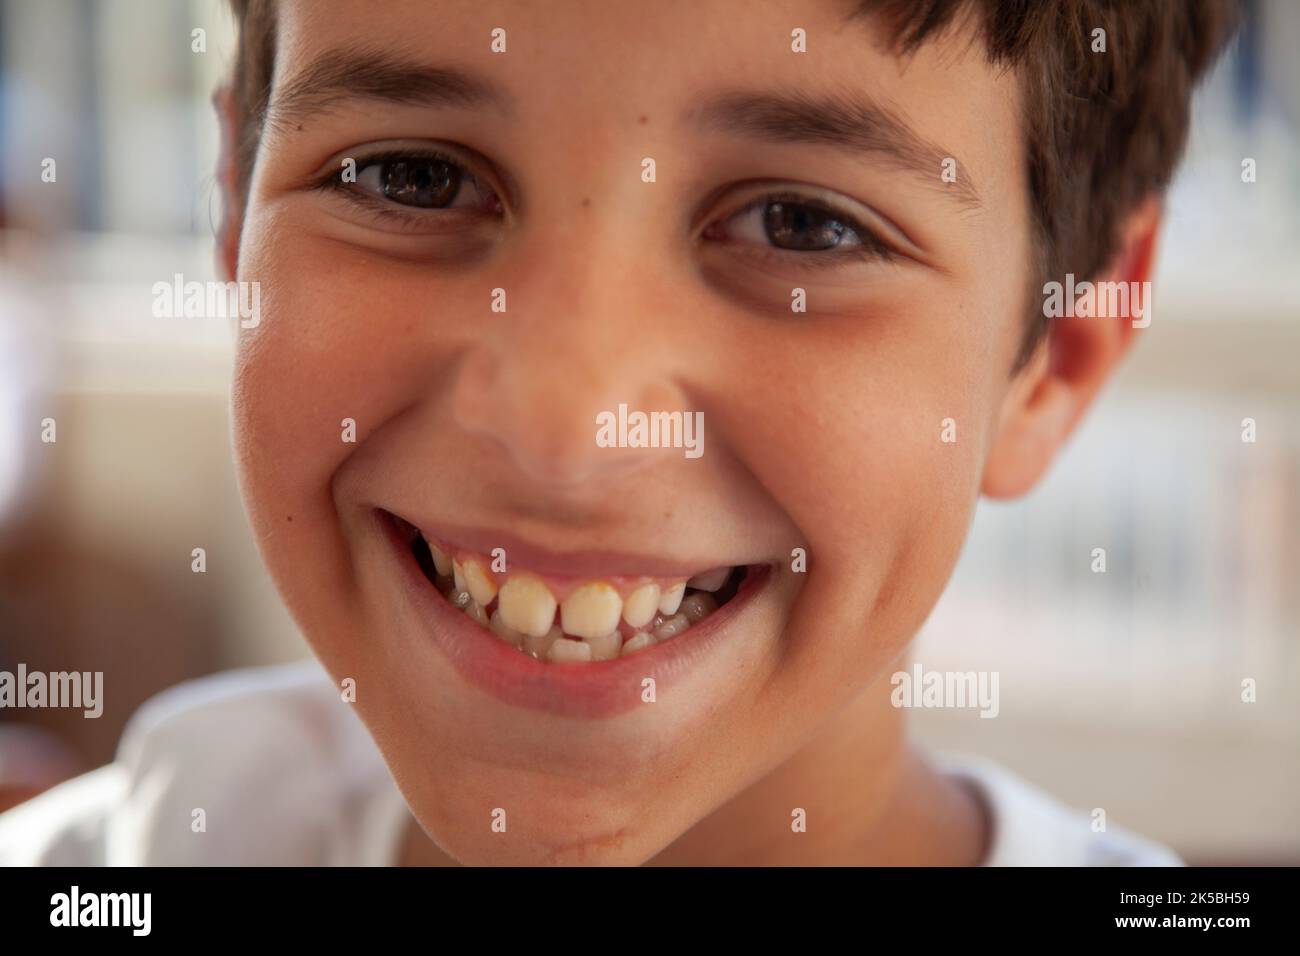 Smiling Boy Looking at Camera Stock Photo